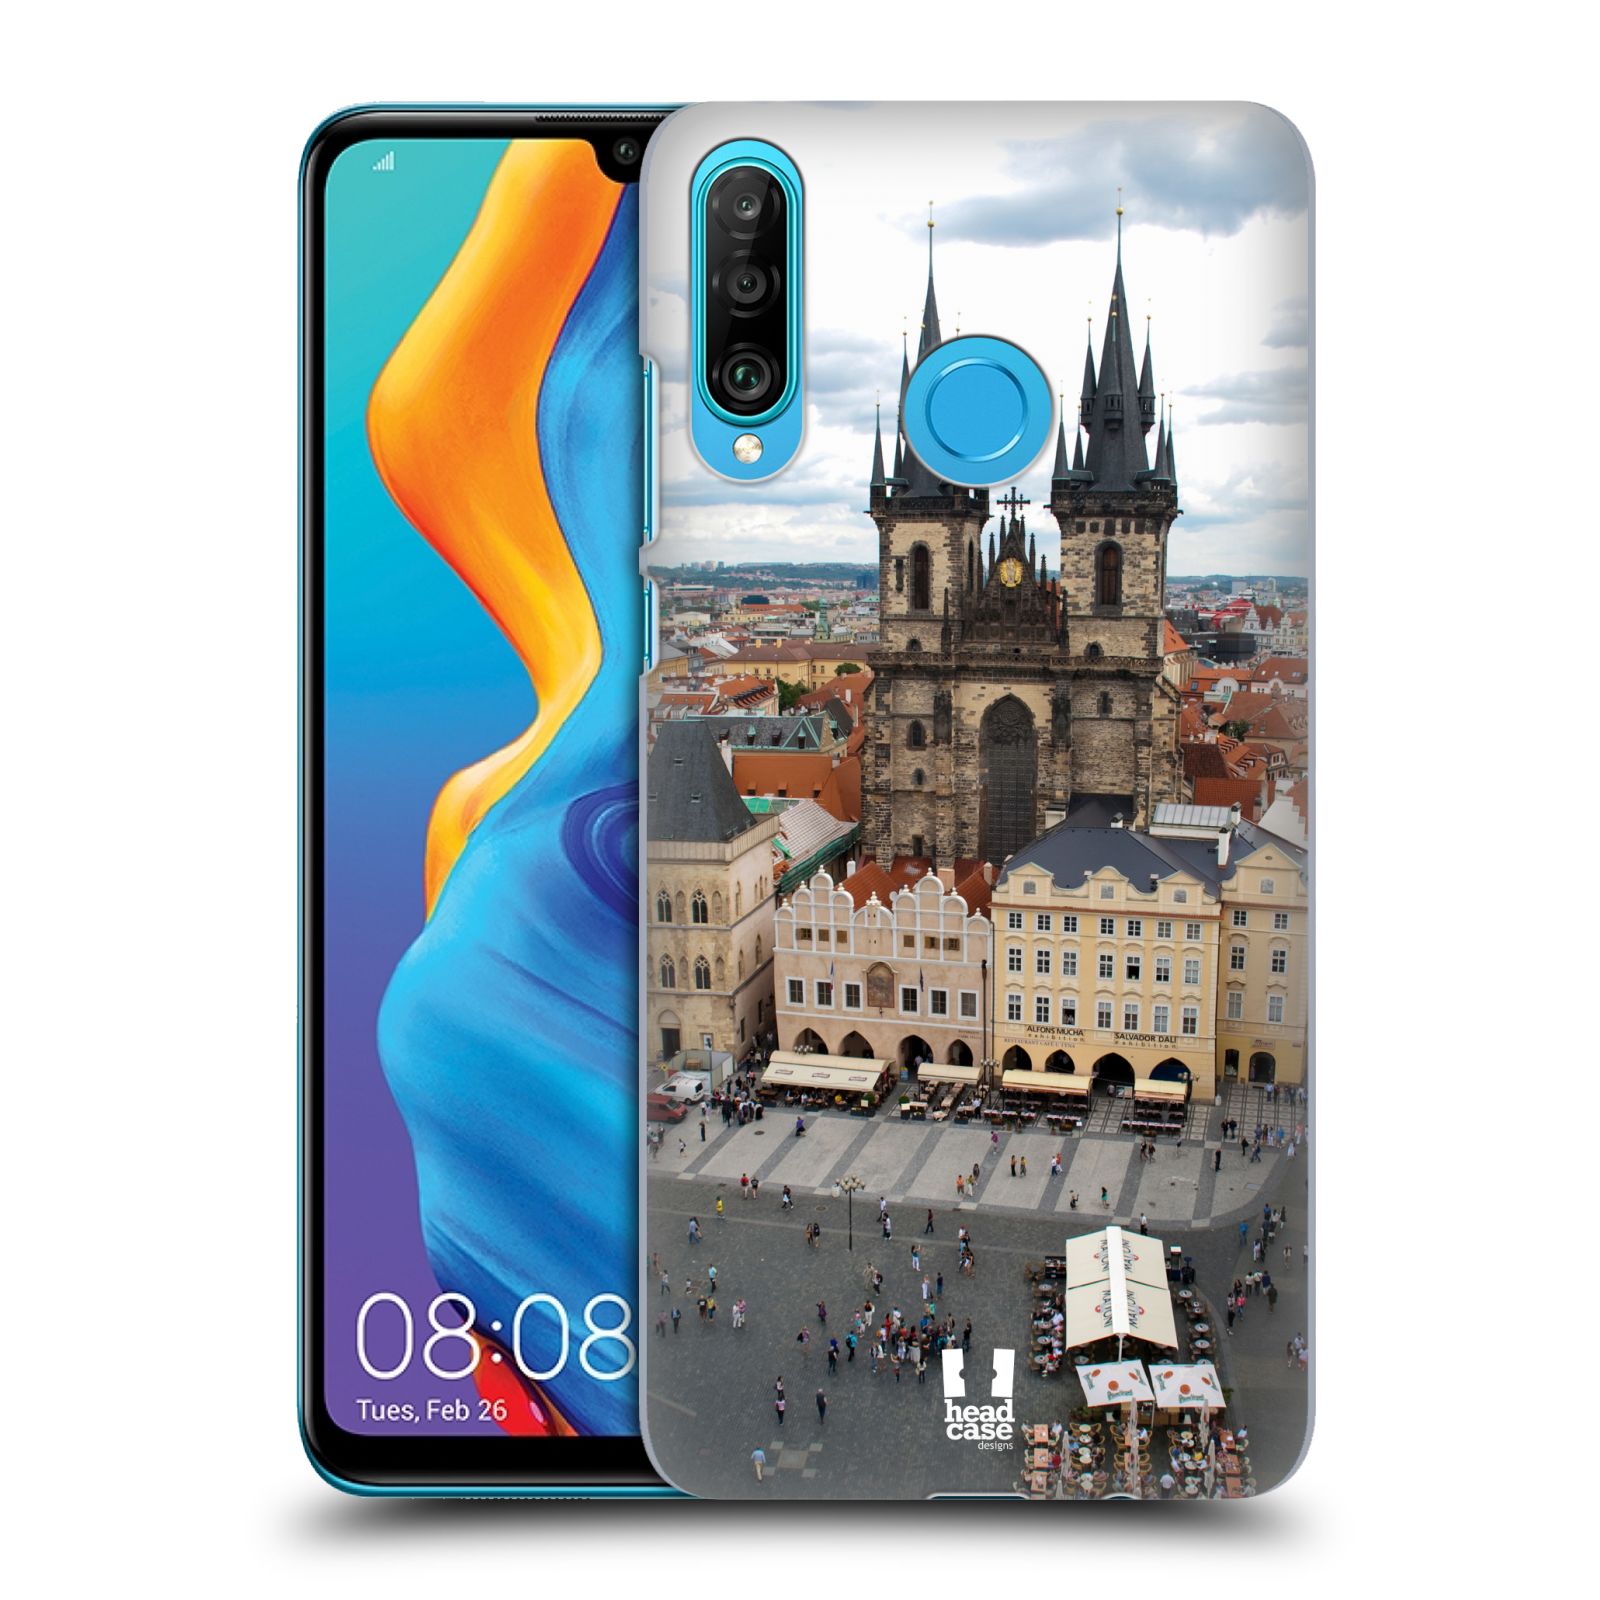 Pouzdro na mobil Huawei P30 LITE - HEAD CASE - vzor Města foto náměstí ČESKÁ REPUBLIKA, PRAHA, STAROMĚSTSKÉ NÁMĚSTÍ